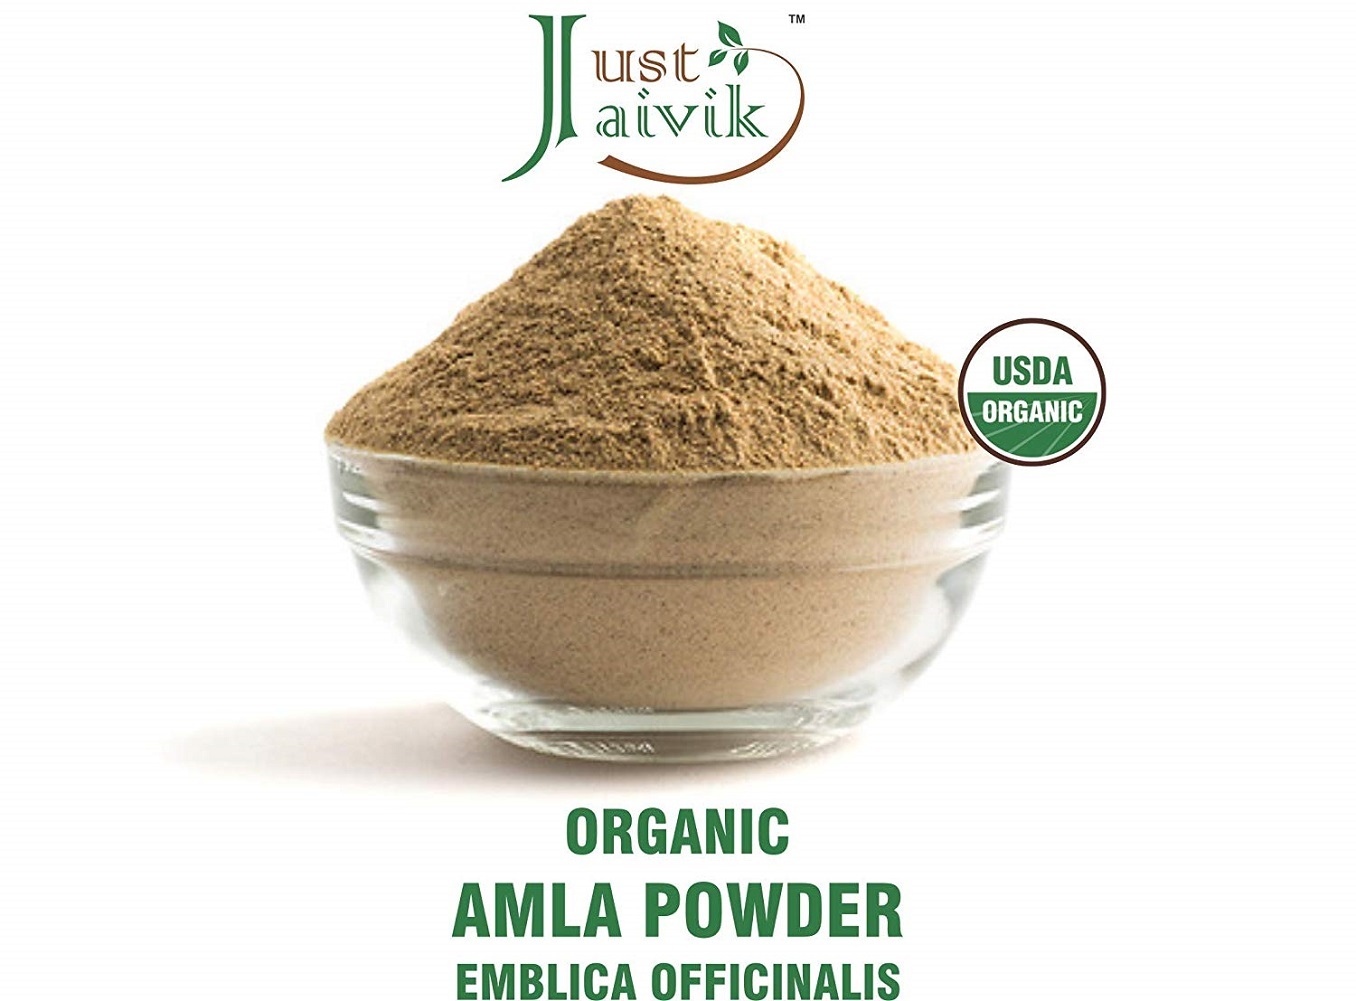 Just Jaivik 100% Organic Amla Powder - Certified(AN USDA Organic Certified Herb)